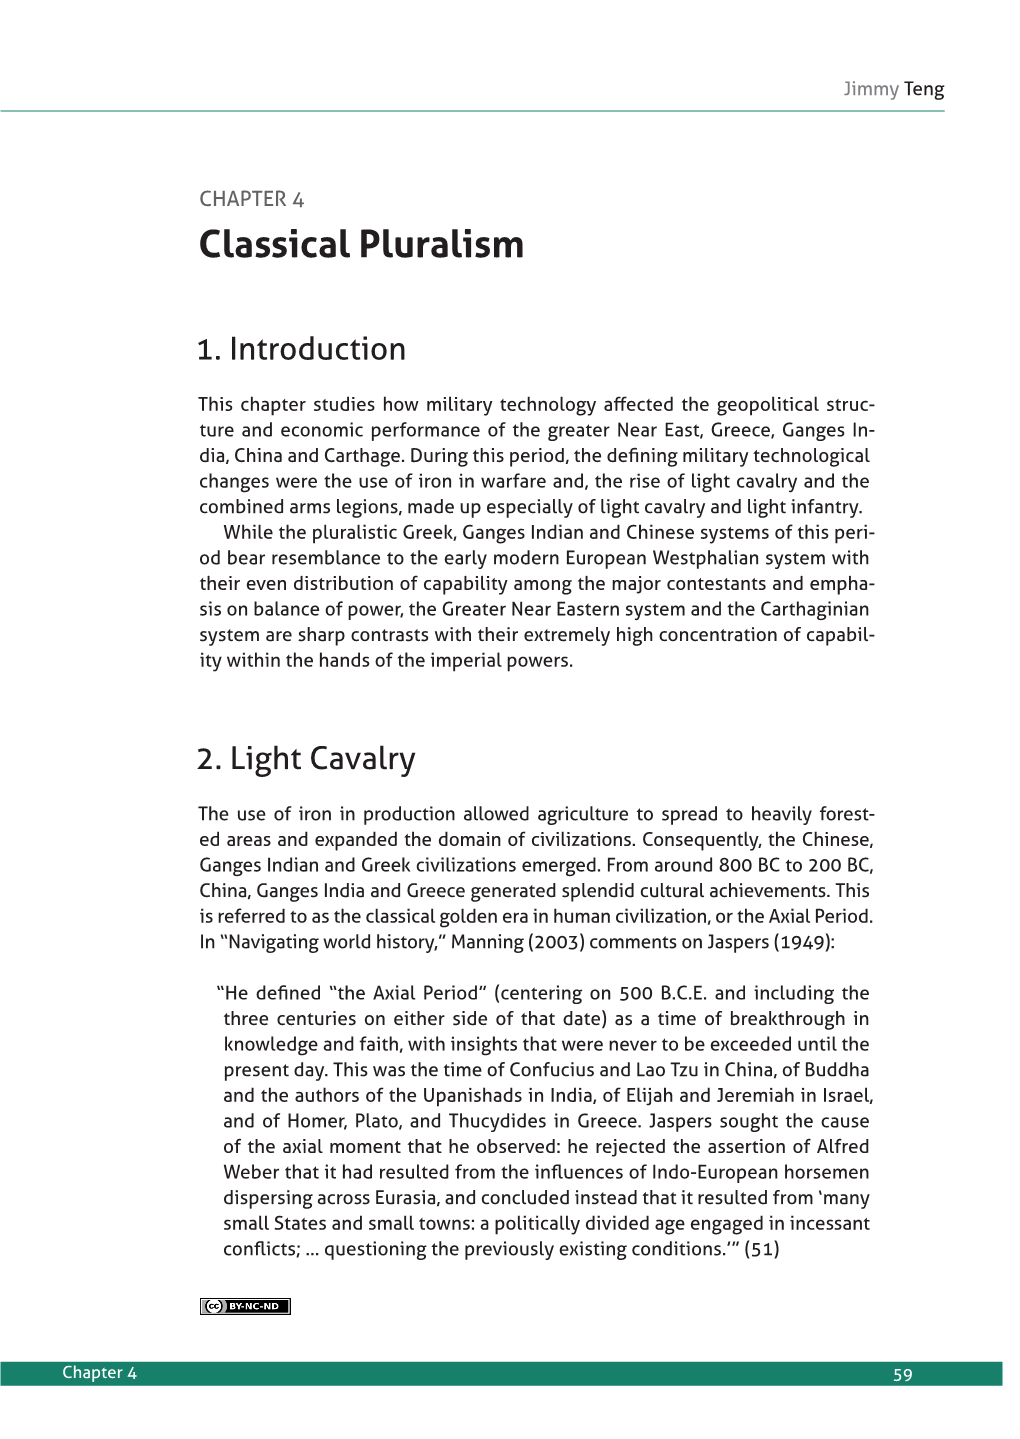 Classical Pluralism